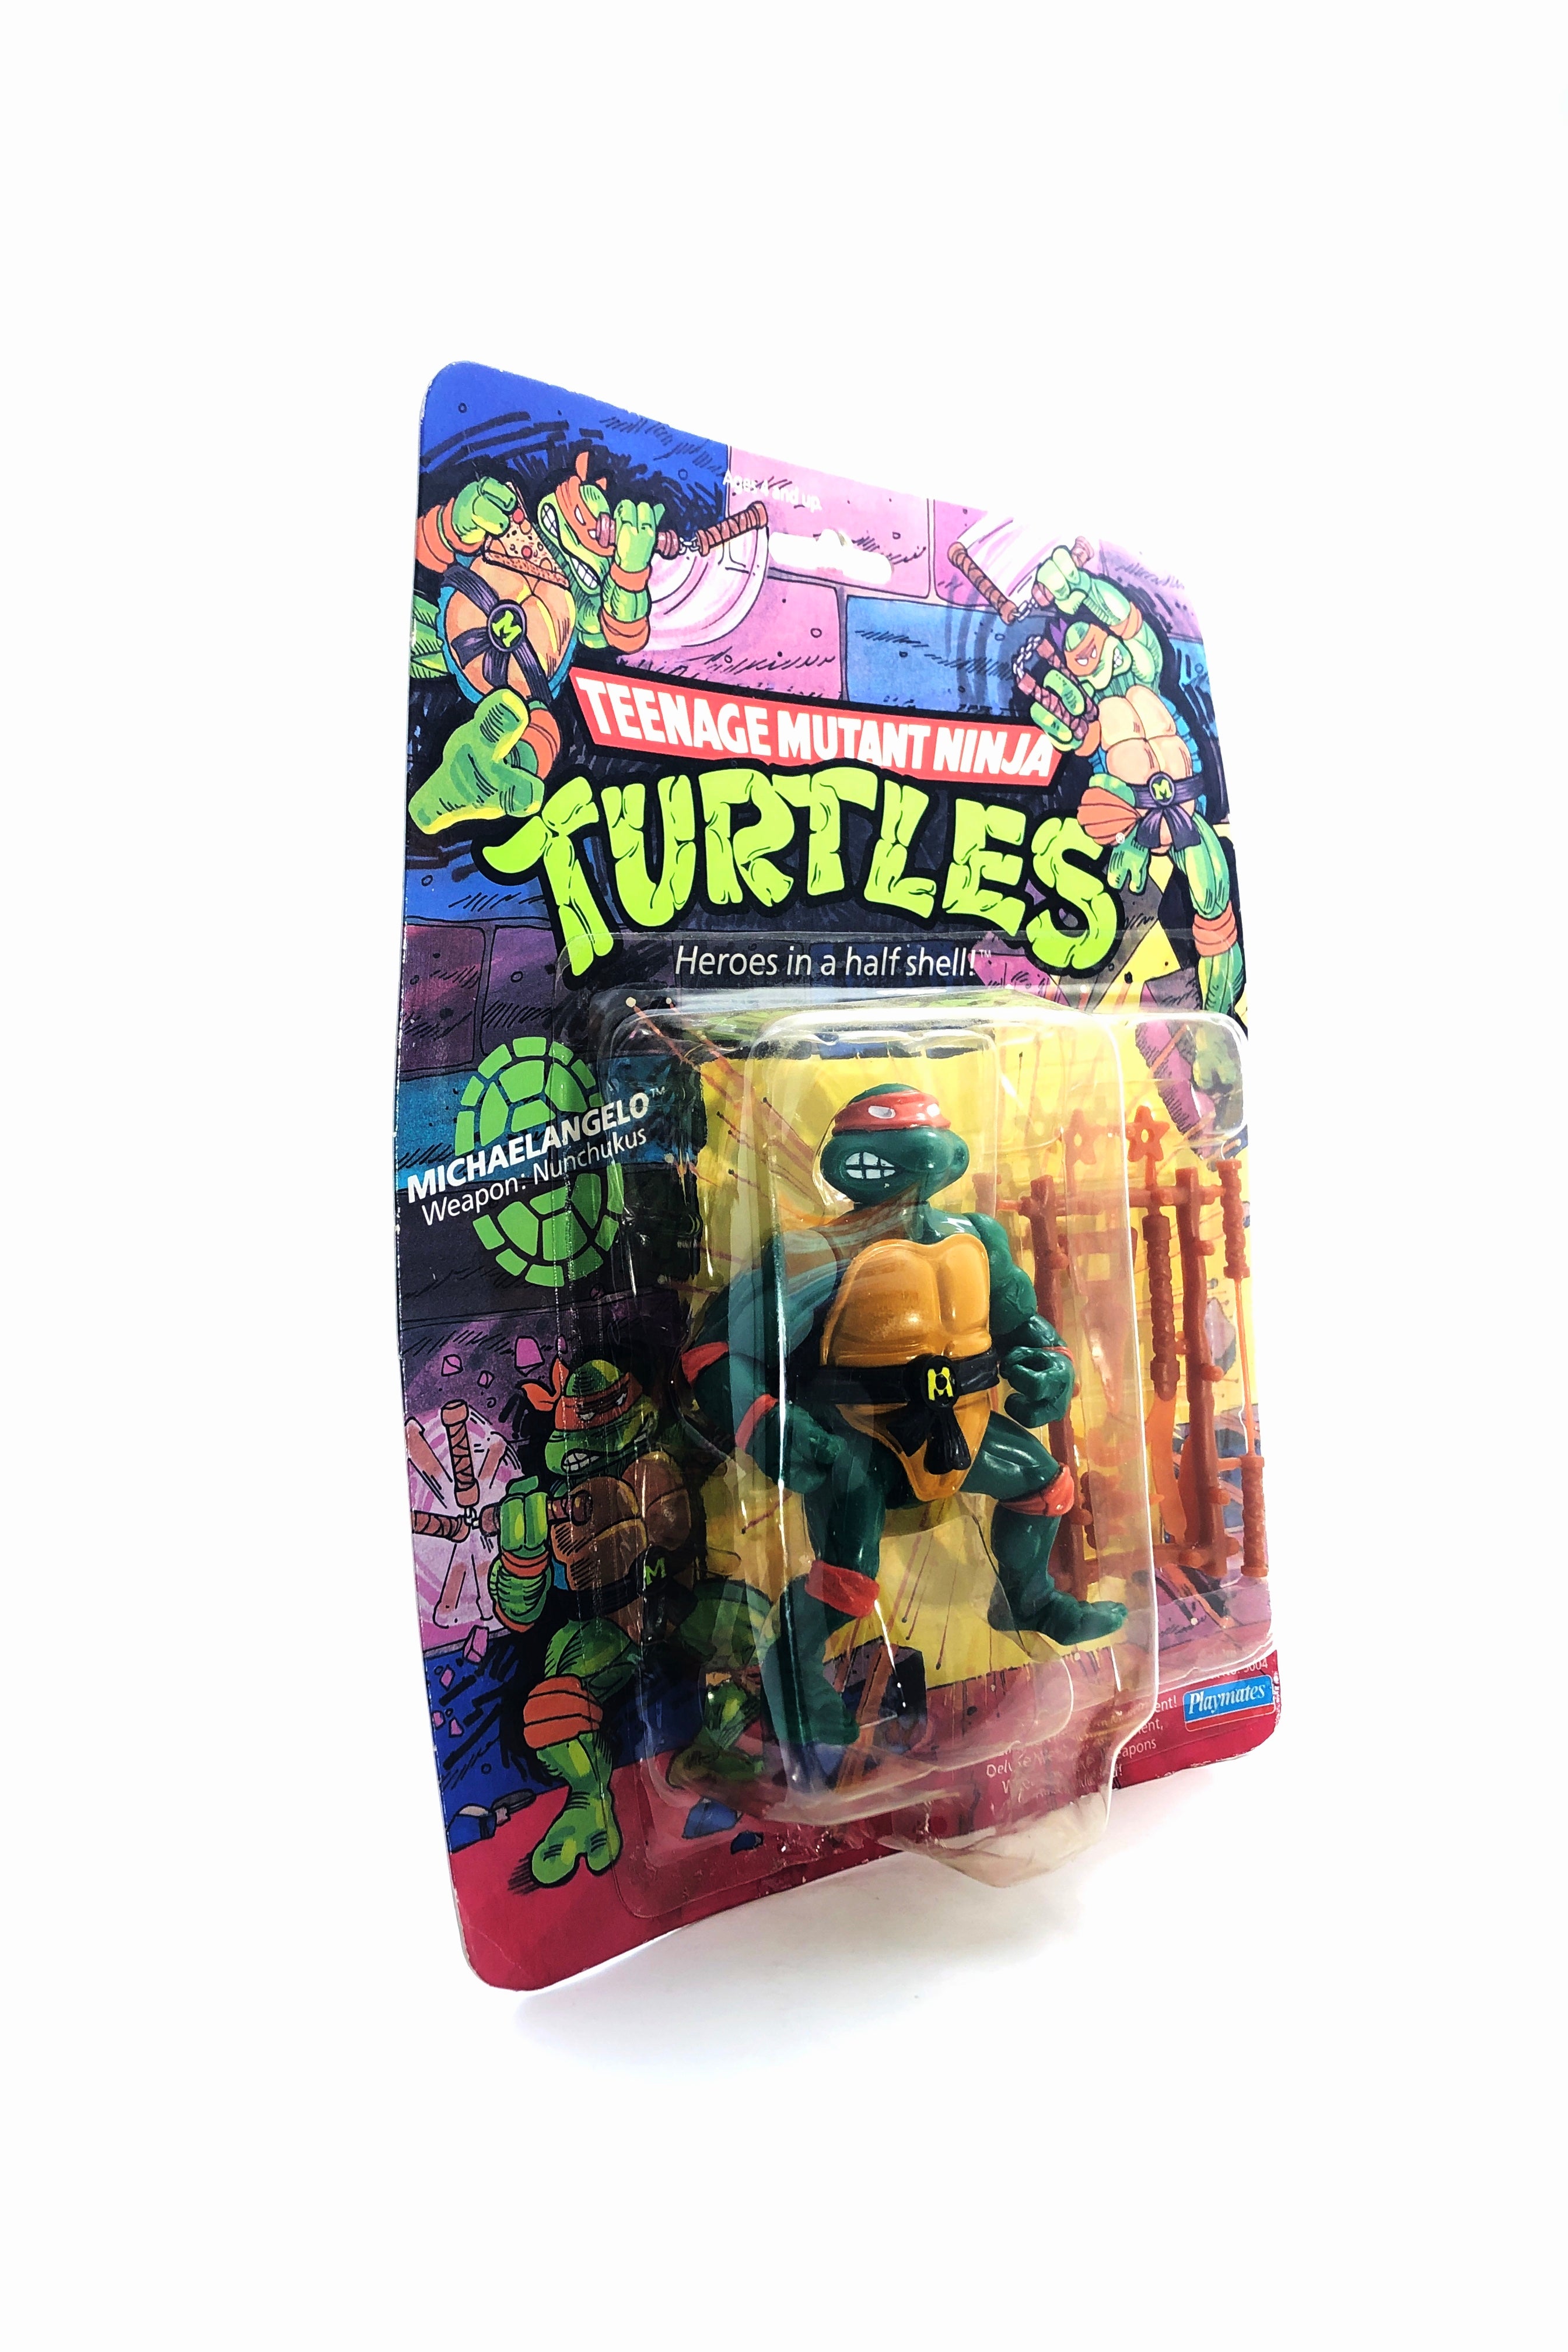 Teenage Mutant Ninja Turtles Michelangelo (Playmates, 1988) - 0